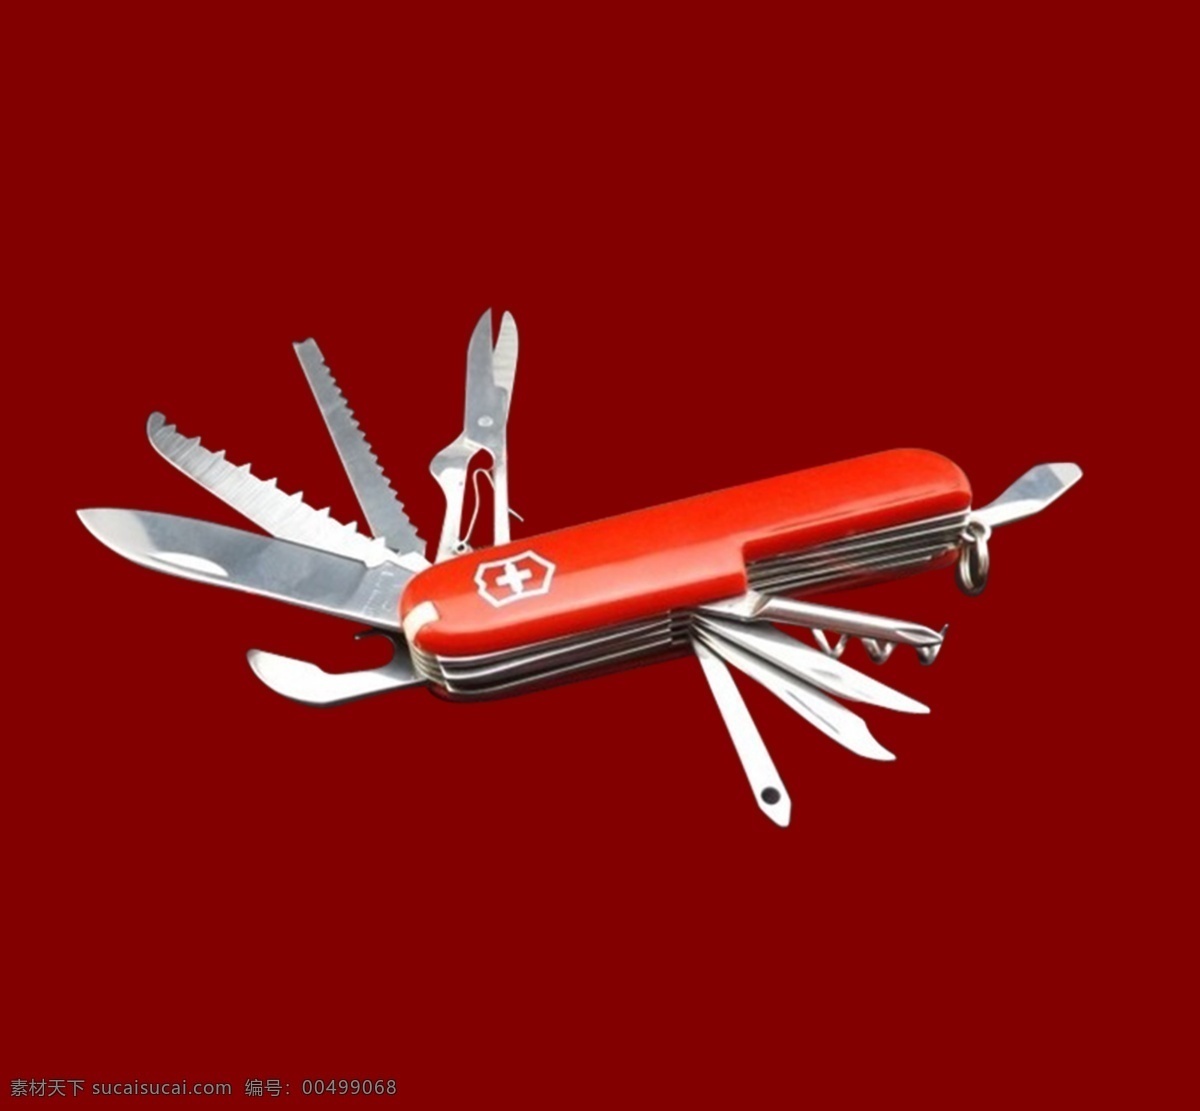 军刀 模板 高清 红色 多种刀子 psd源文件